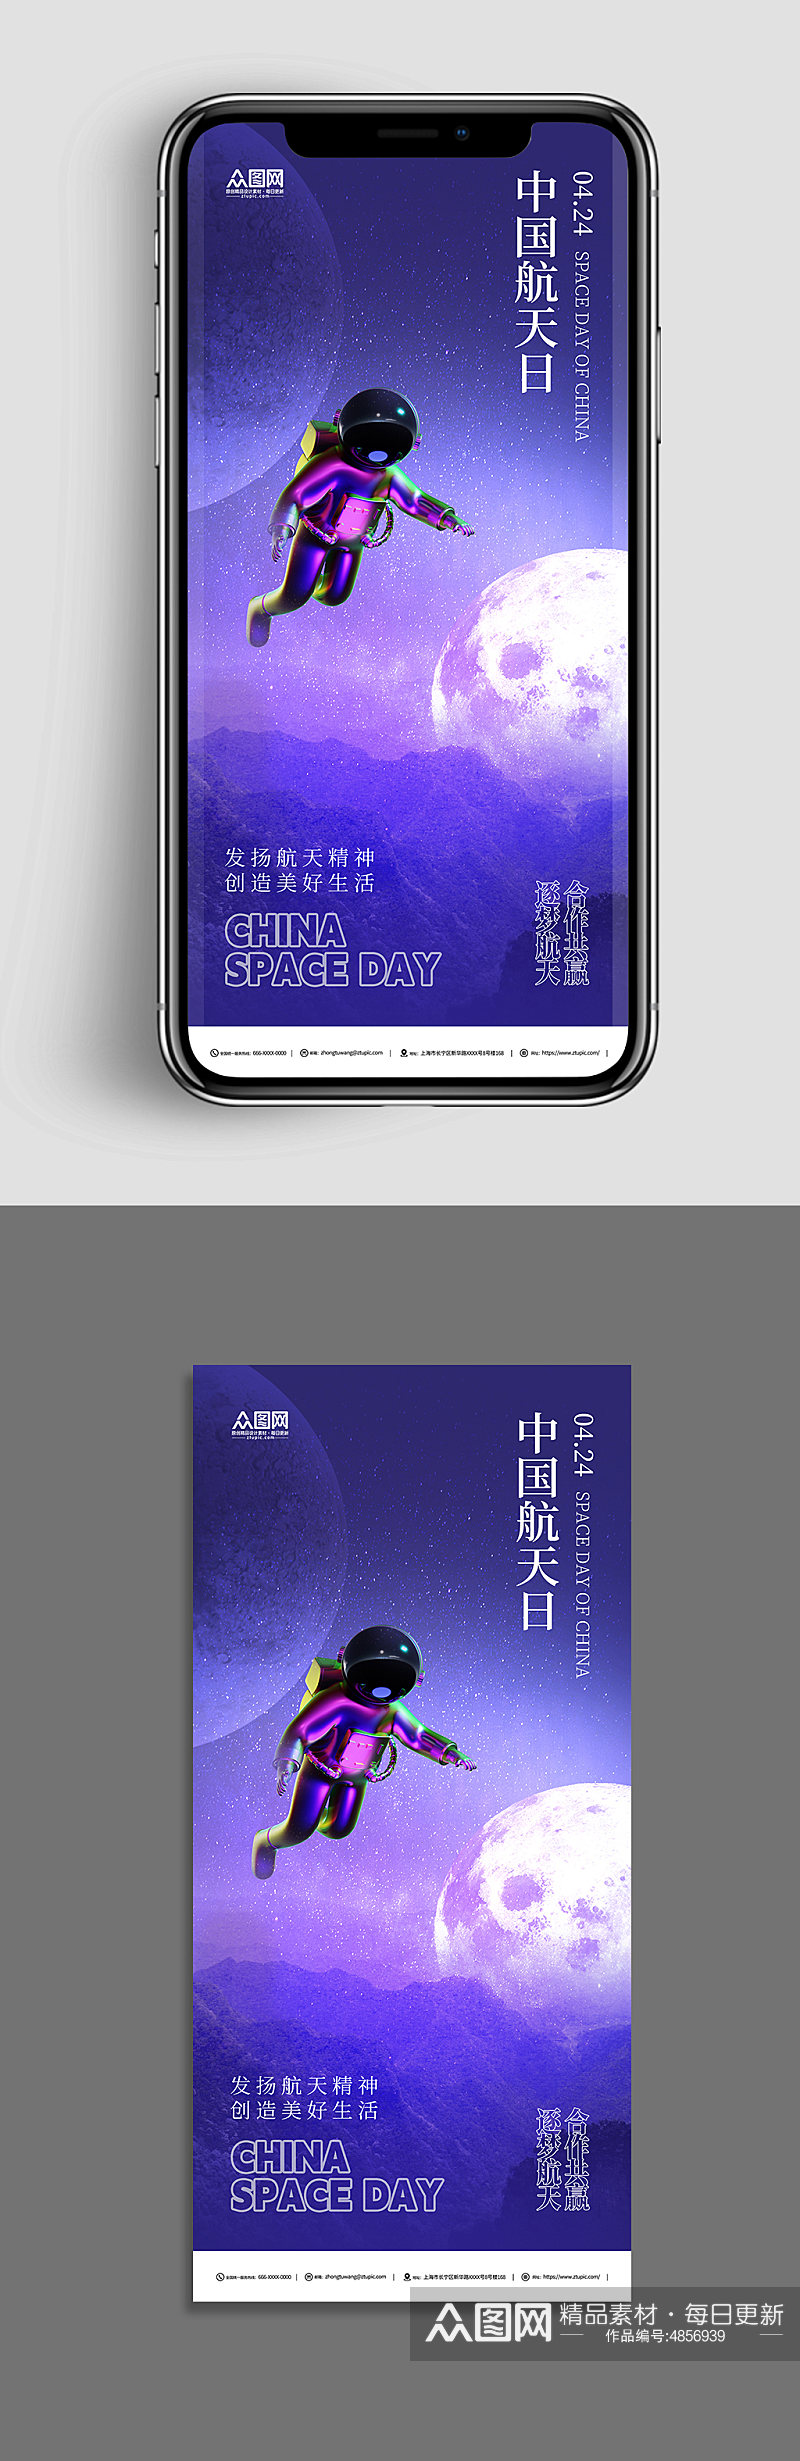 紫色4月24日中国航天日海报素材